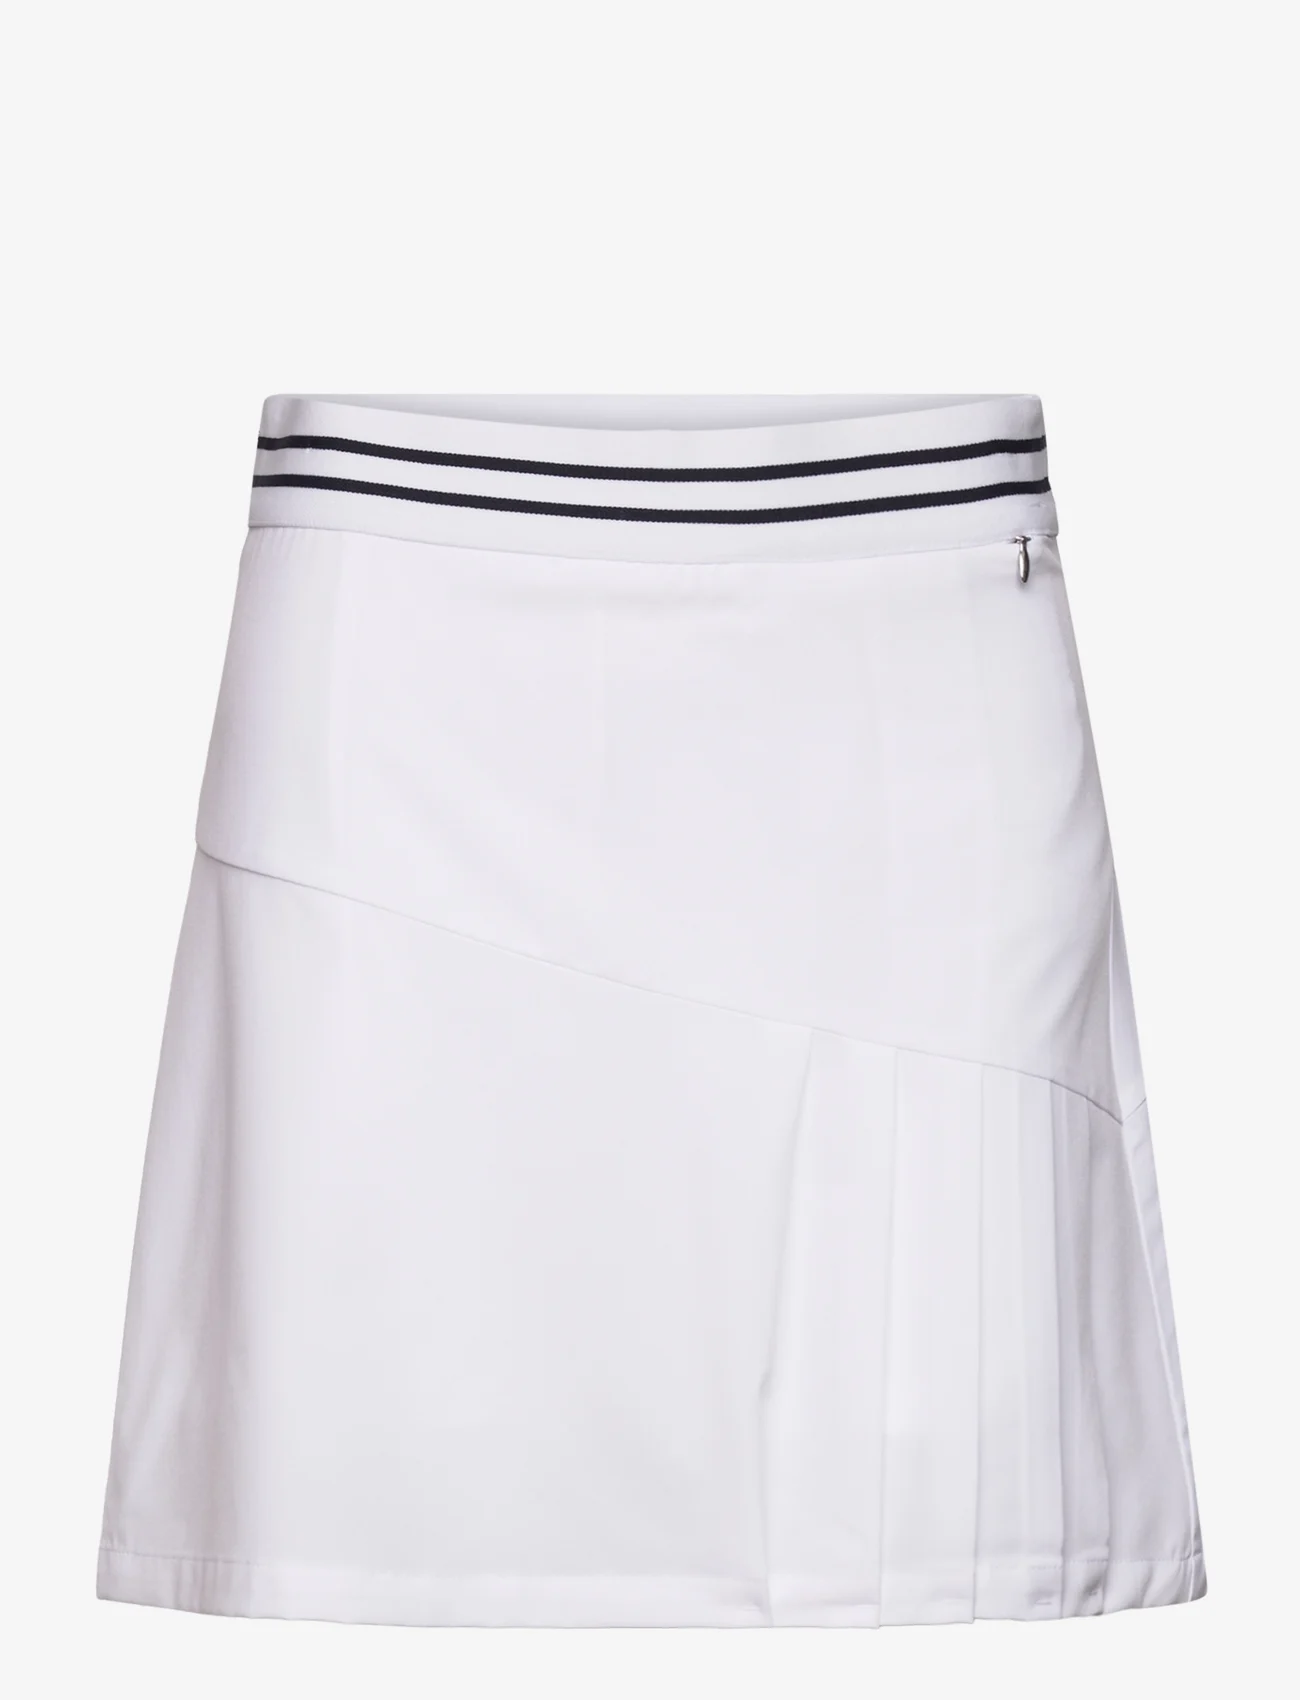 Daily Sports - ELISSA SKORT 45 CM - skirts - white - 0